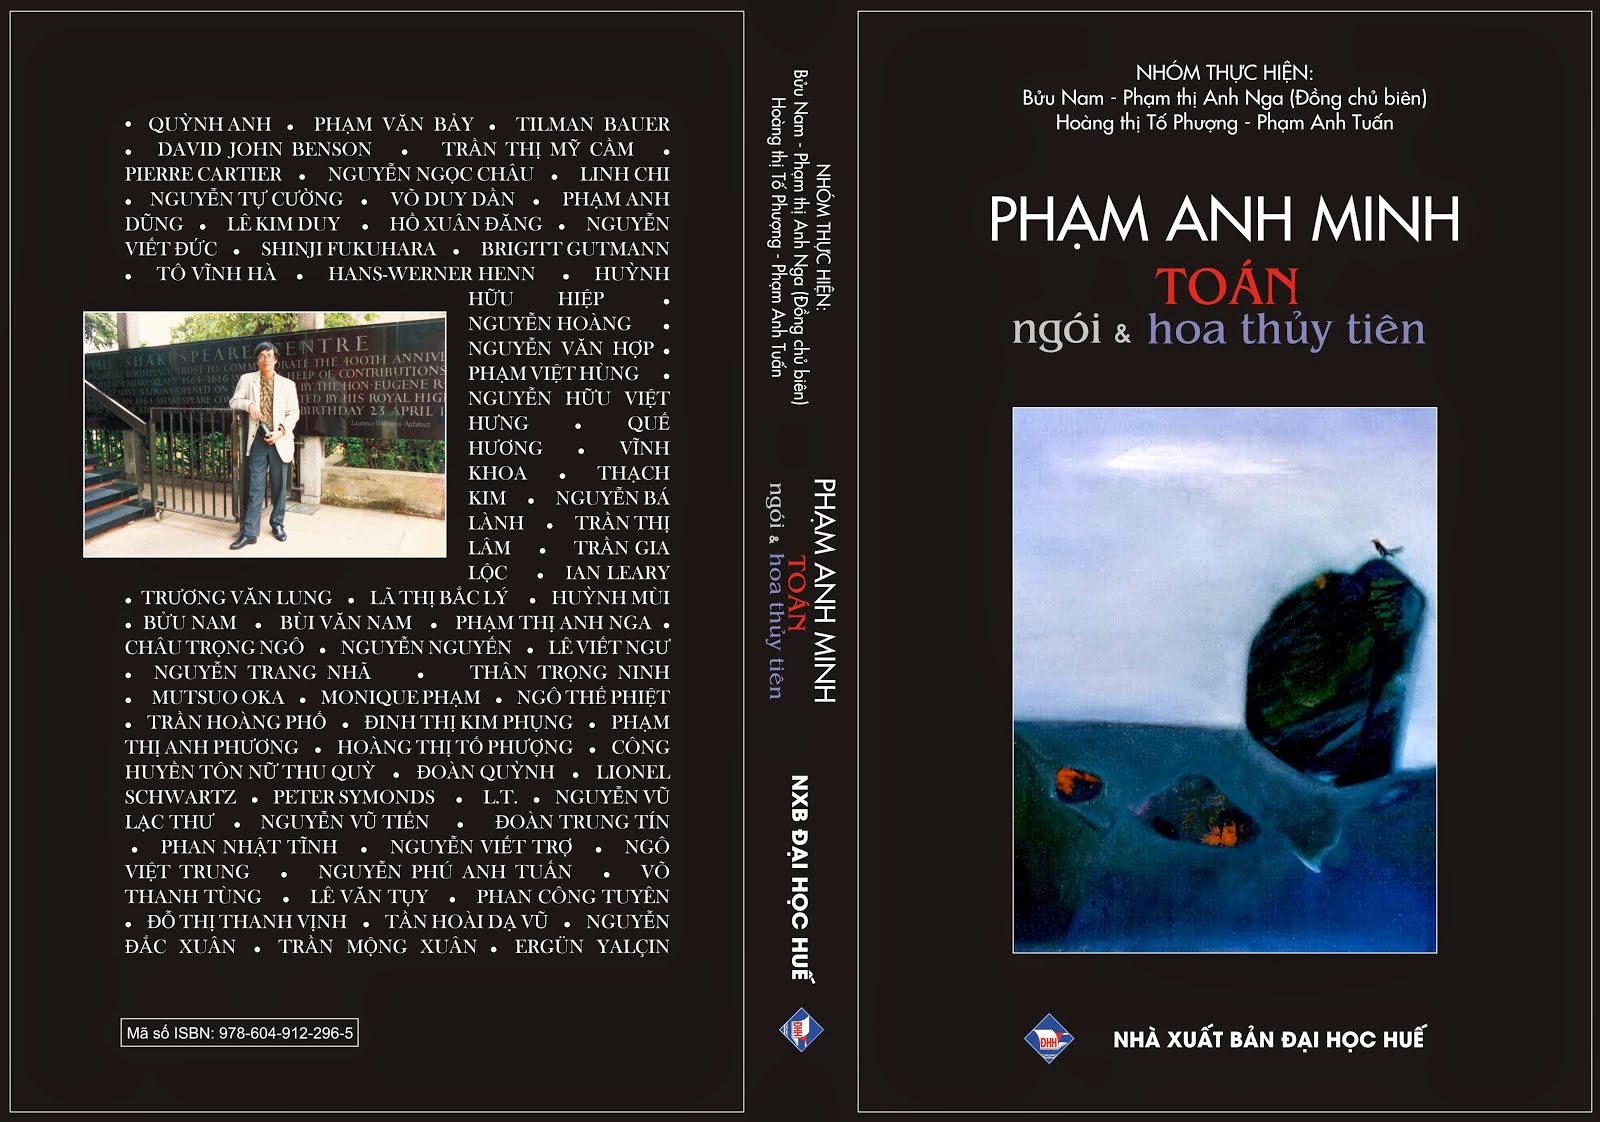 « Phạm Anh Minh - Toán, ngói & hoa thủy tiên » (2014)